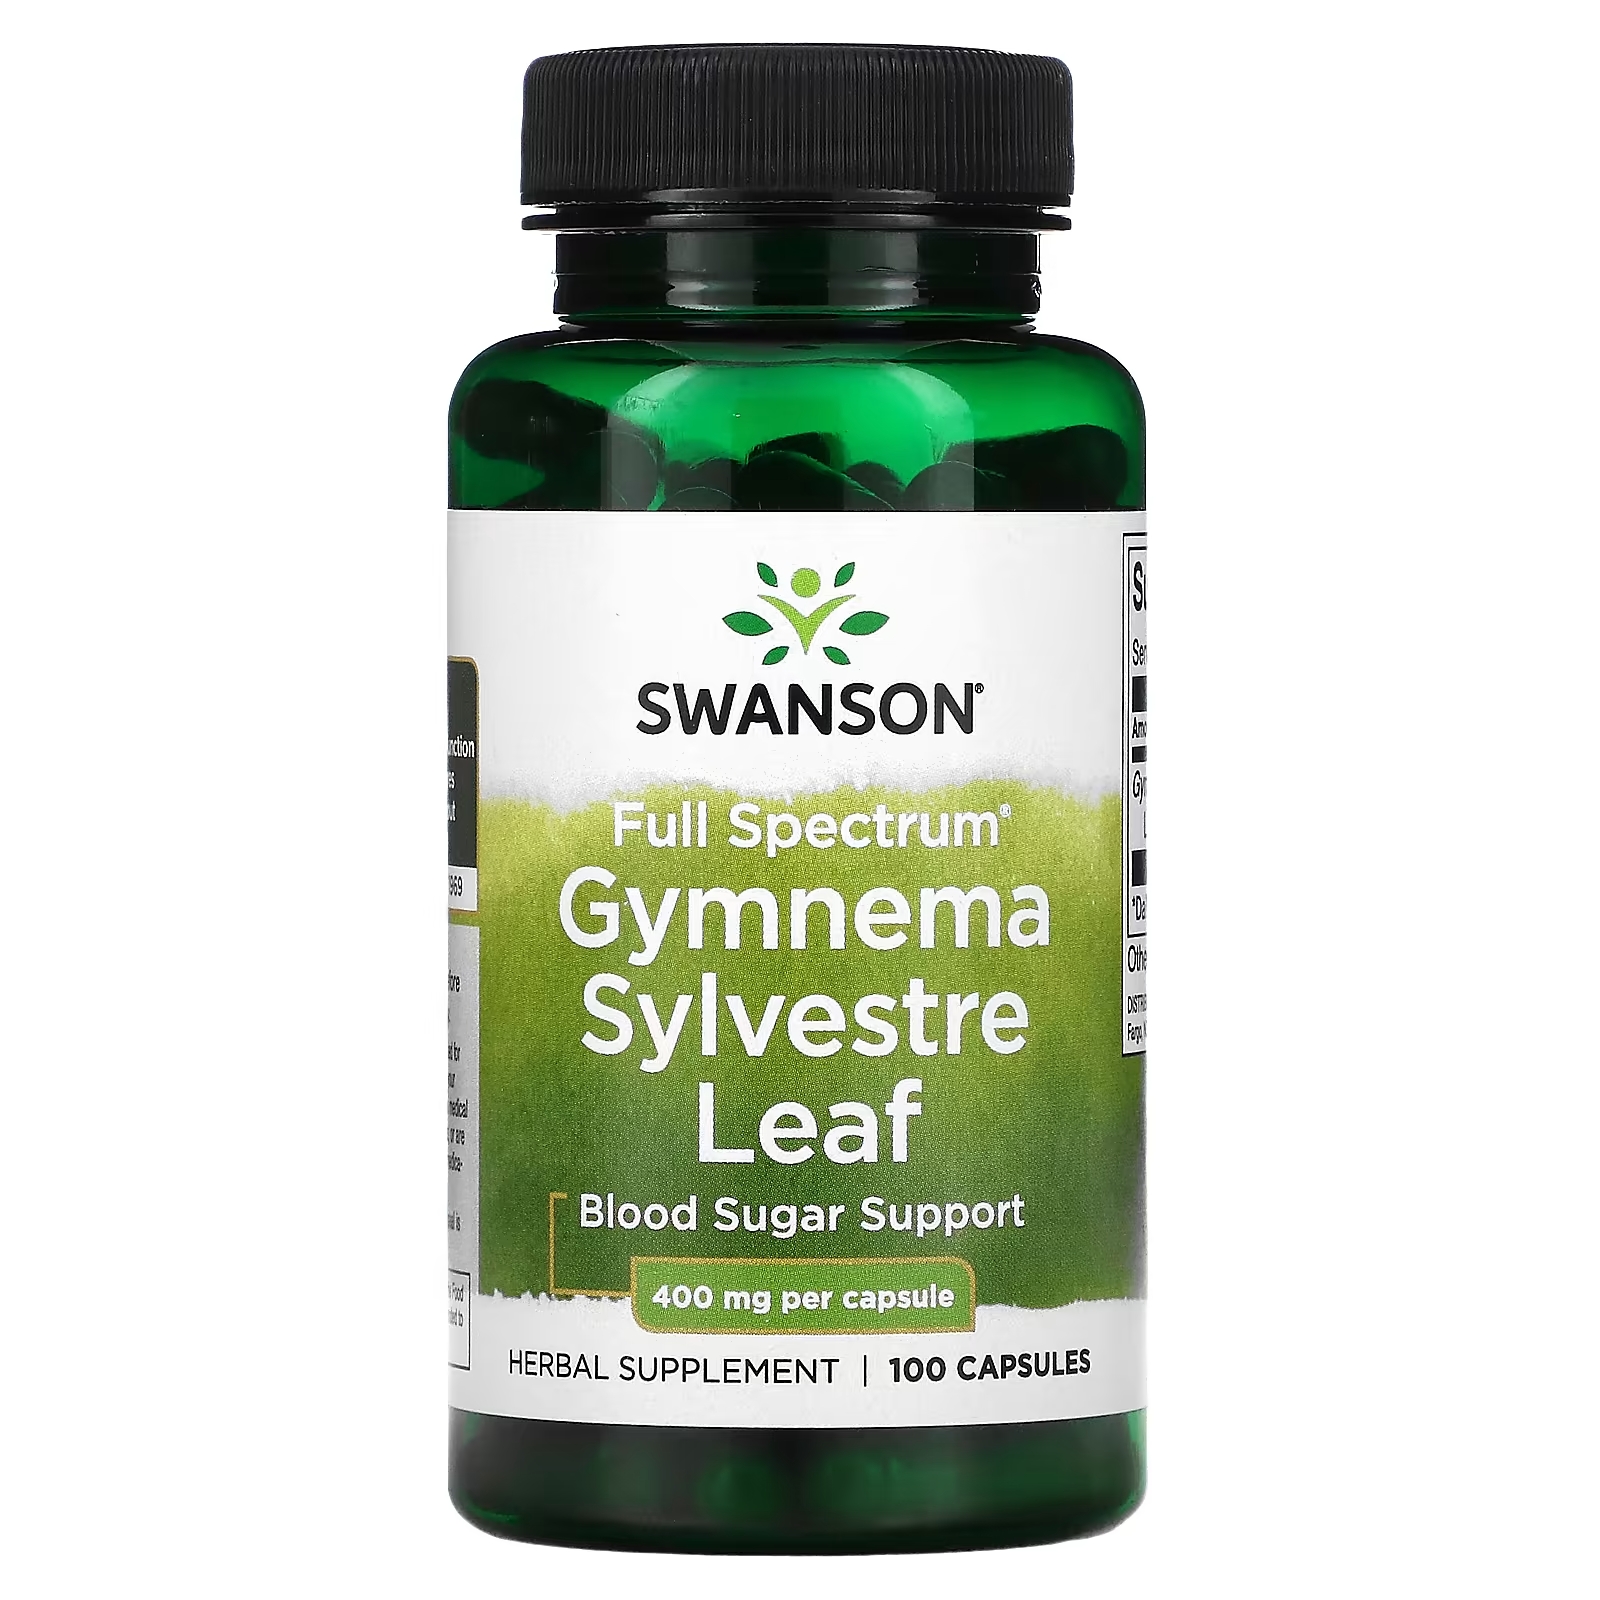 Swanson Gymnema Sylvestre Leaf полный спектр действия 400 мг, 100 капсул swanson лист базилика священного полный спектр 400 мг 120 капсул